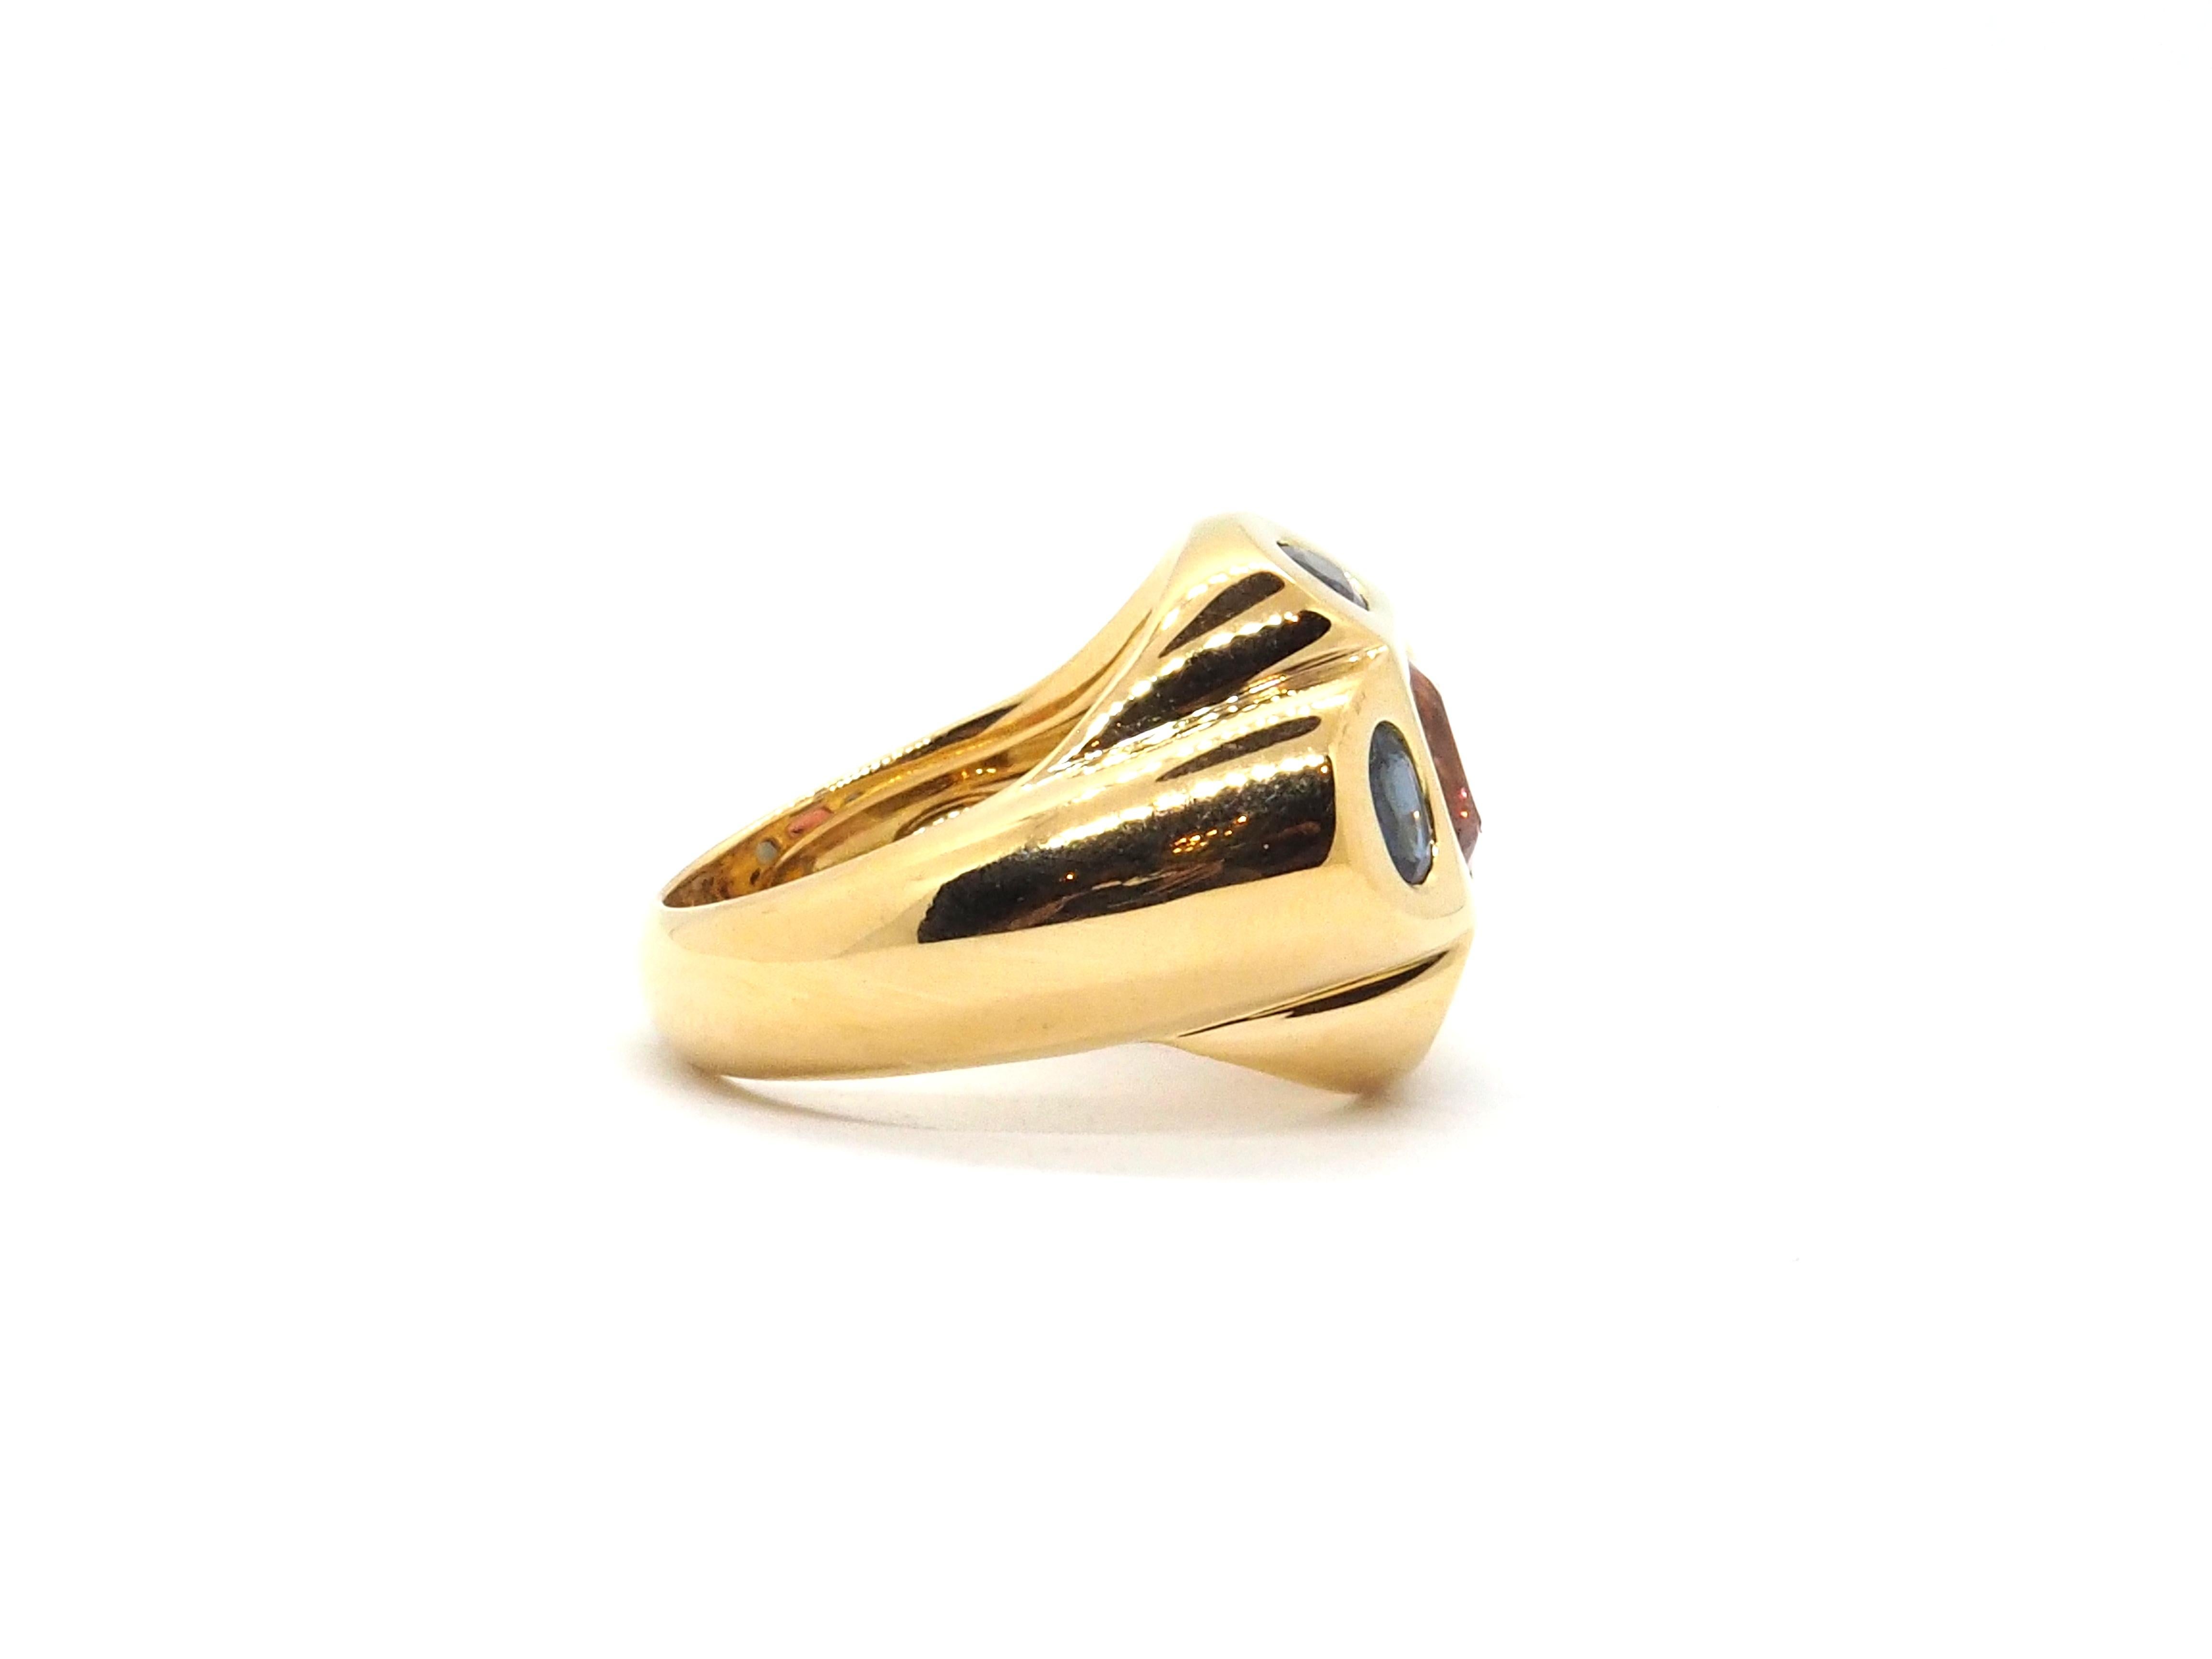 Moderner moderner Ring aus 18 Karat Gelbgold, verziert mit einem zentralen quadratischen Turmalin von etwa 2 Karat und umgeben von 4 ovalen blauen Saphiren mit einem ungefähren Gewicht von 2 Karat. 
Gesamtgewicht 16 g
Größe des Lampenschirms: 55 